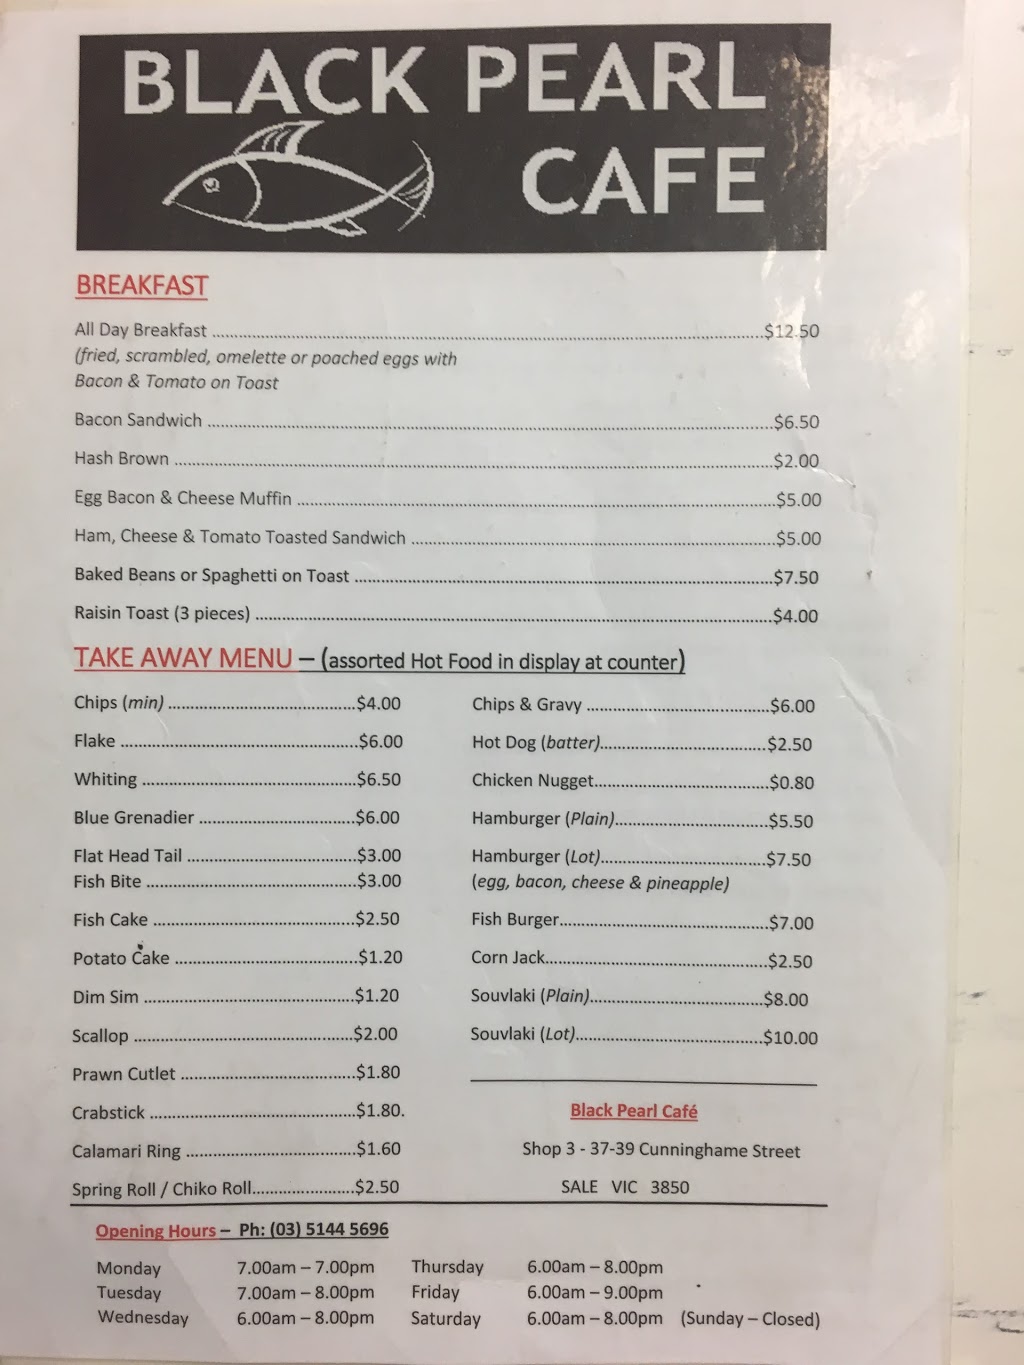 Black Pearl Fish Cafe | cafe | 39 Cunninghame St, Sale VIC 3850, Australia | 0351445696 OR +61 3 5144 5696